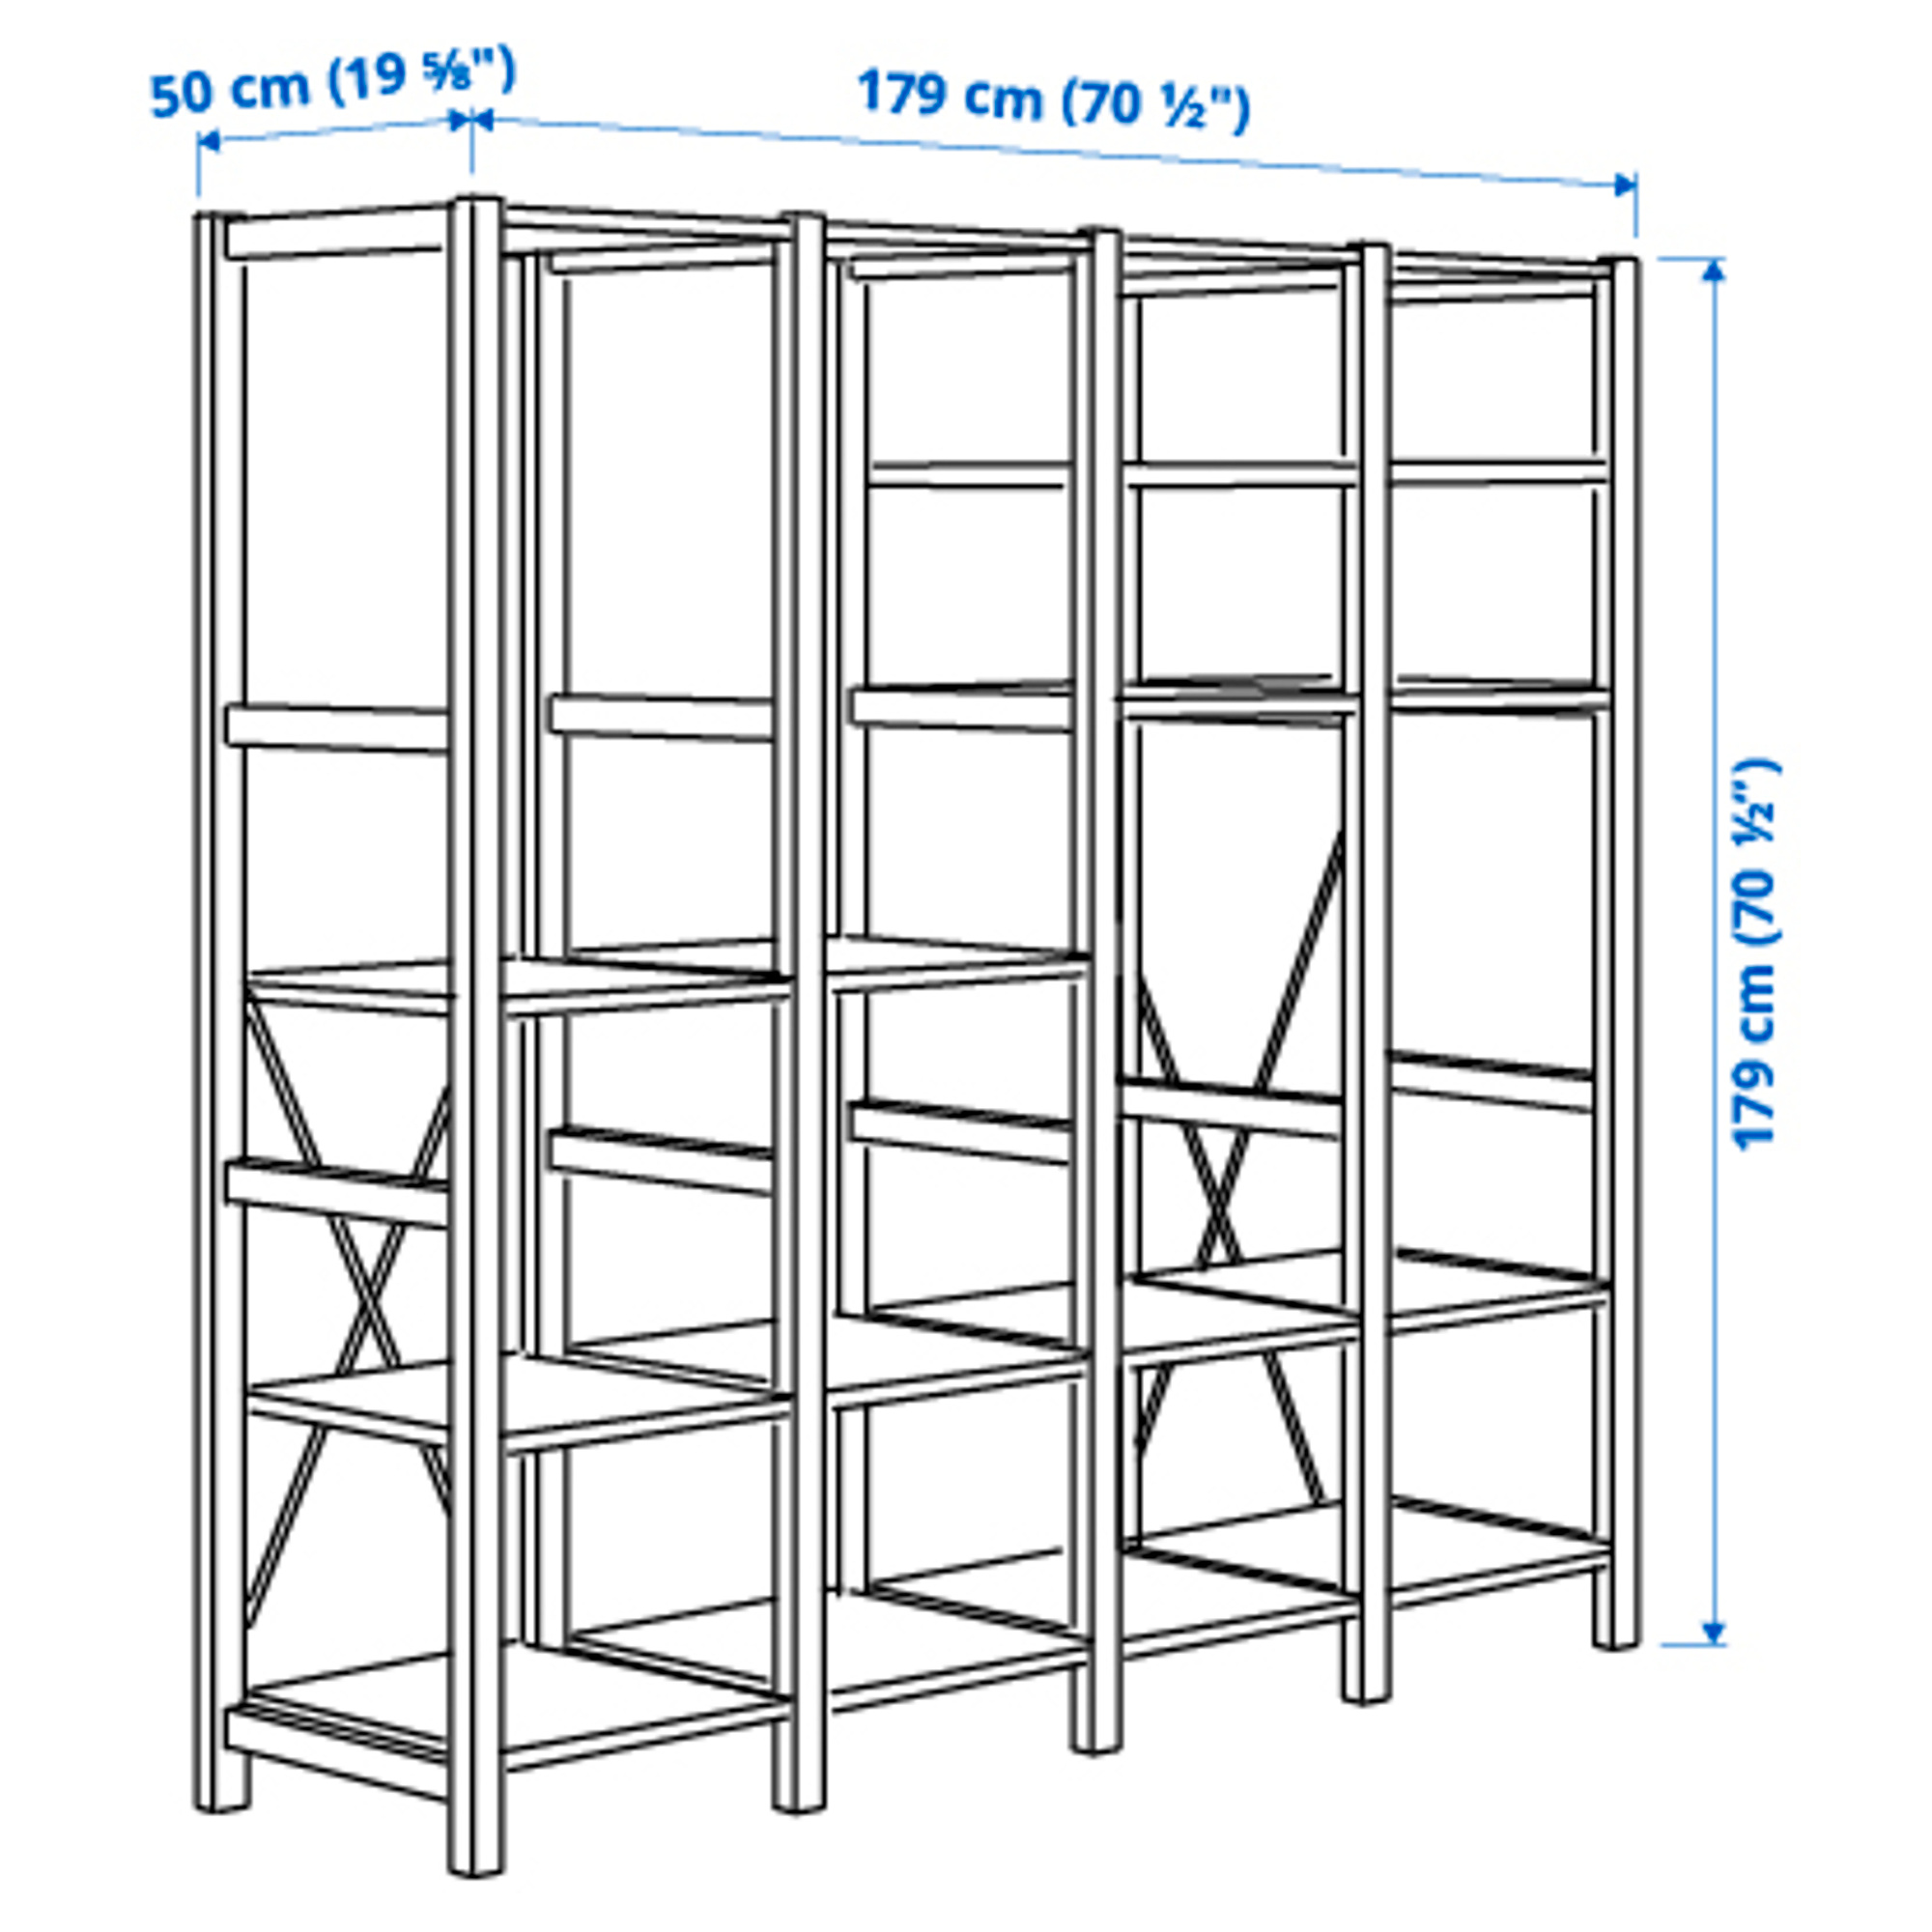 IVAR 4 sections/shelves